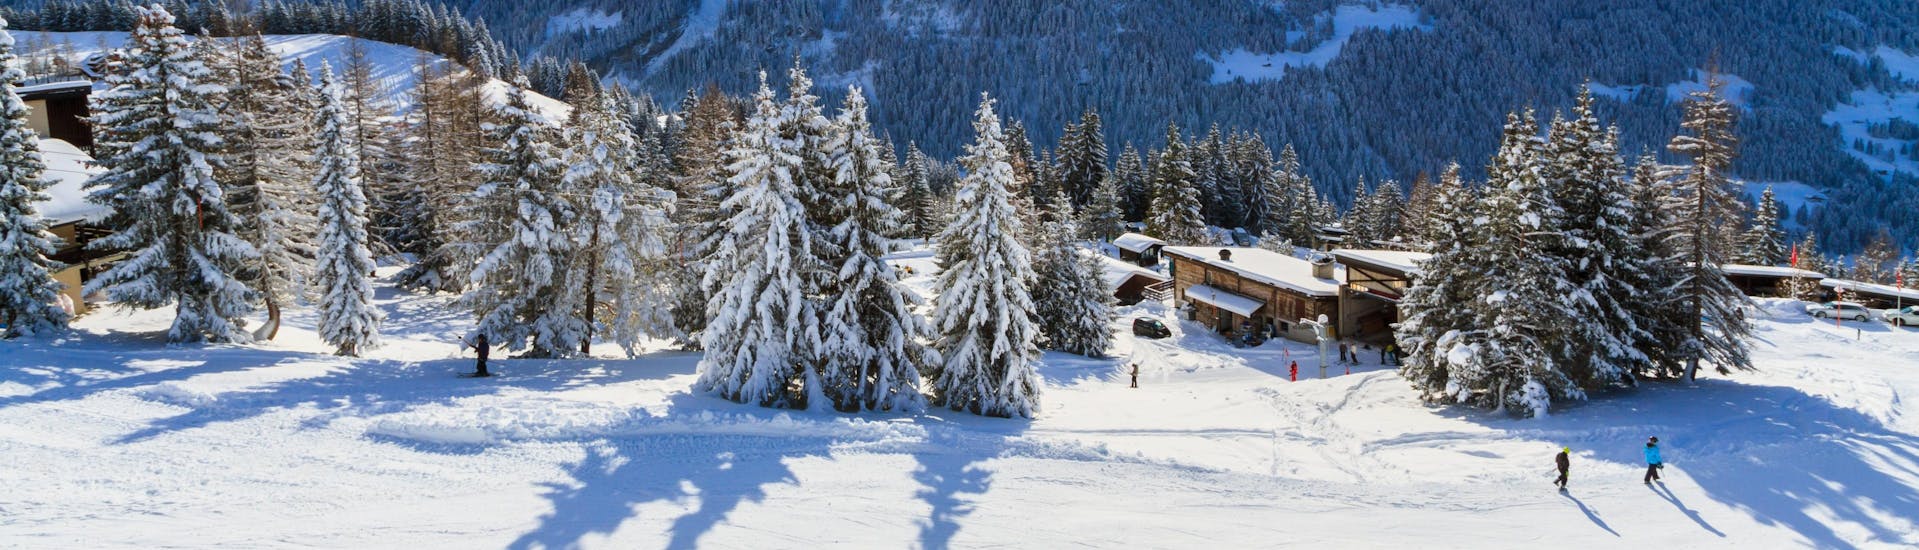 Une vue panoramique des pistes de ski et des montagnes environnantes de Villars-Bretaye, une station de ski suisse populaire où les visiteurs peuvent prendre des cours de ski avec une des écoles de ski locales.